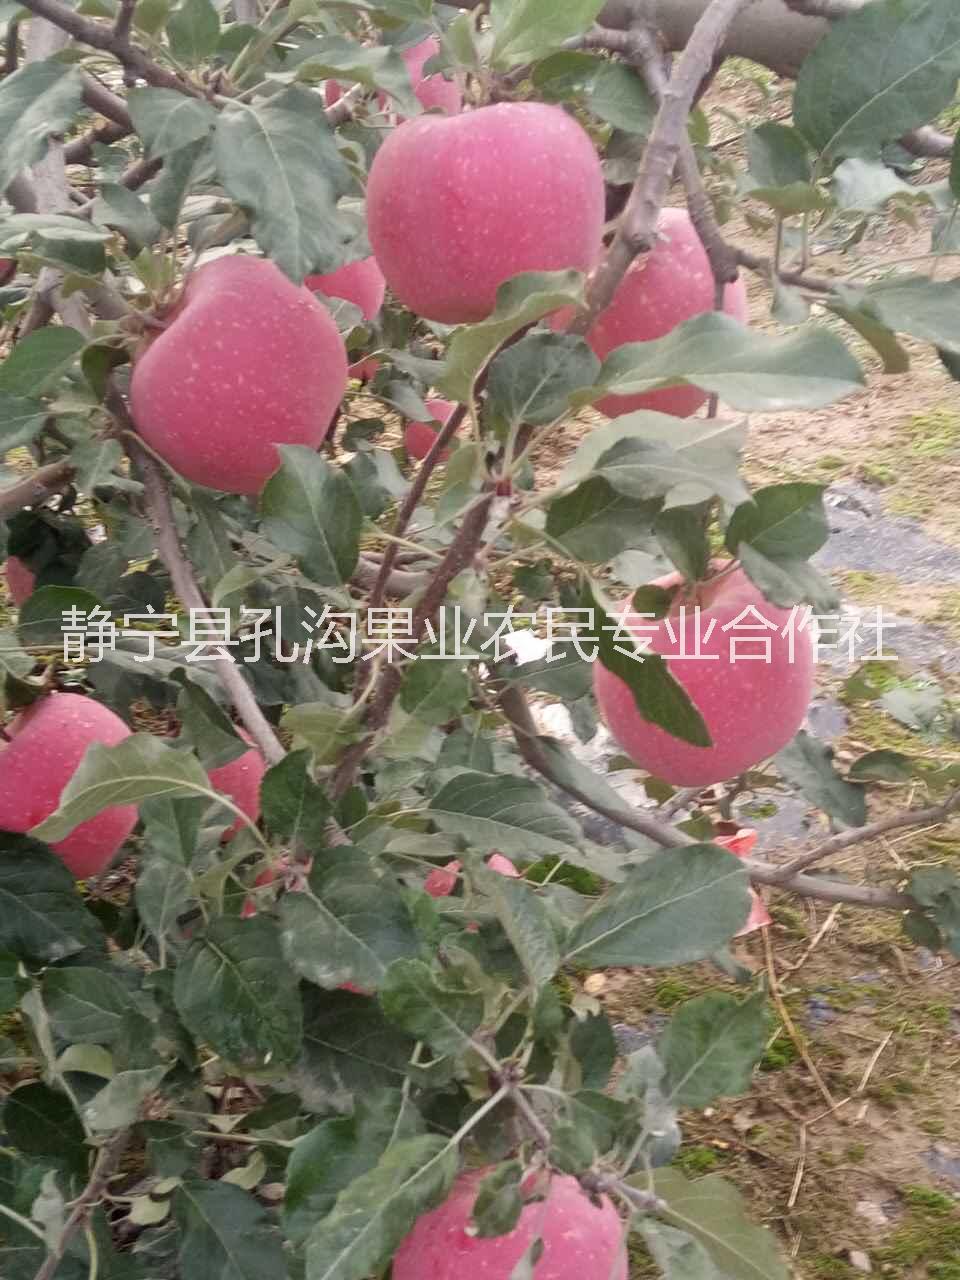 75#红富士苹果 一级果 着色率80%以上 甘肃静宁红富士9枚礼盒装图片